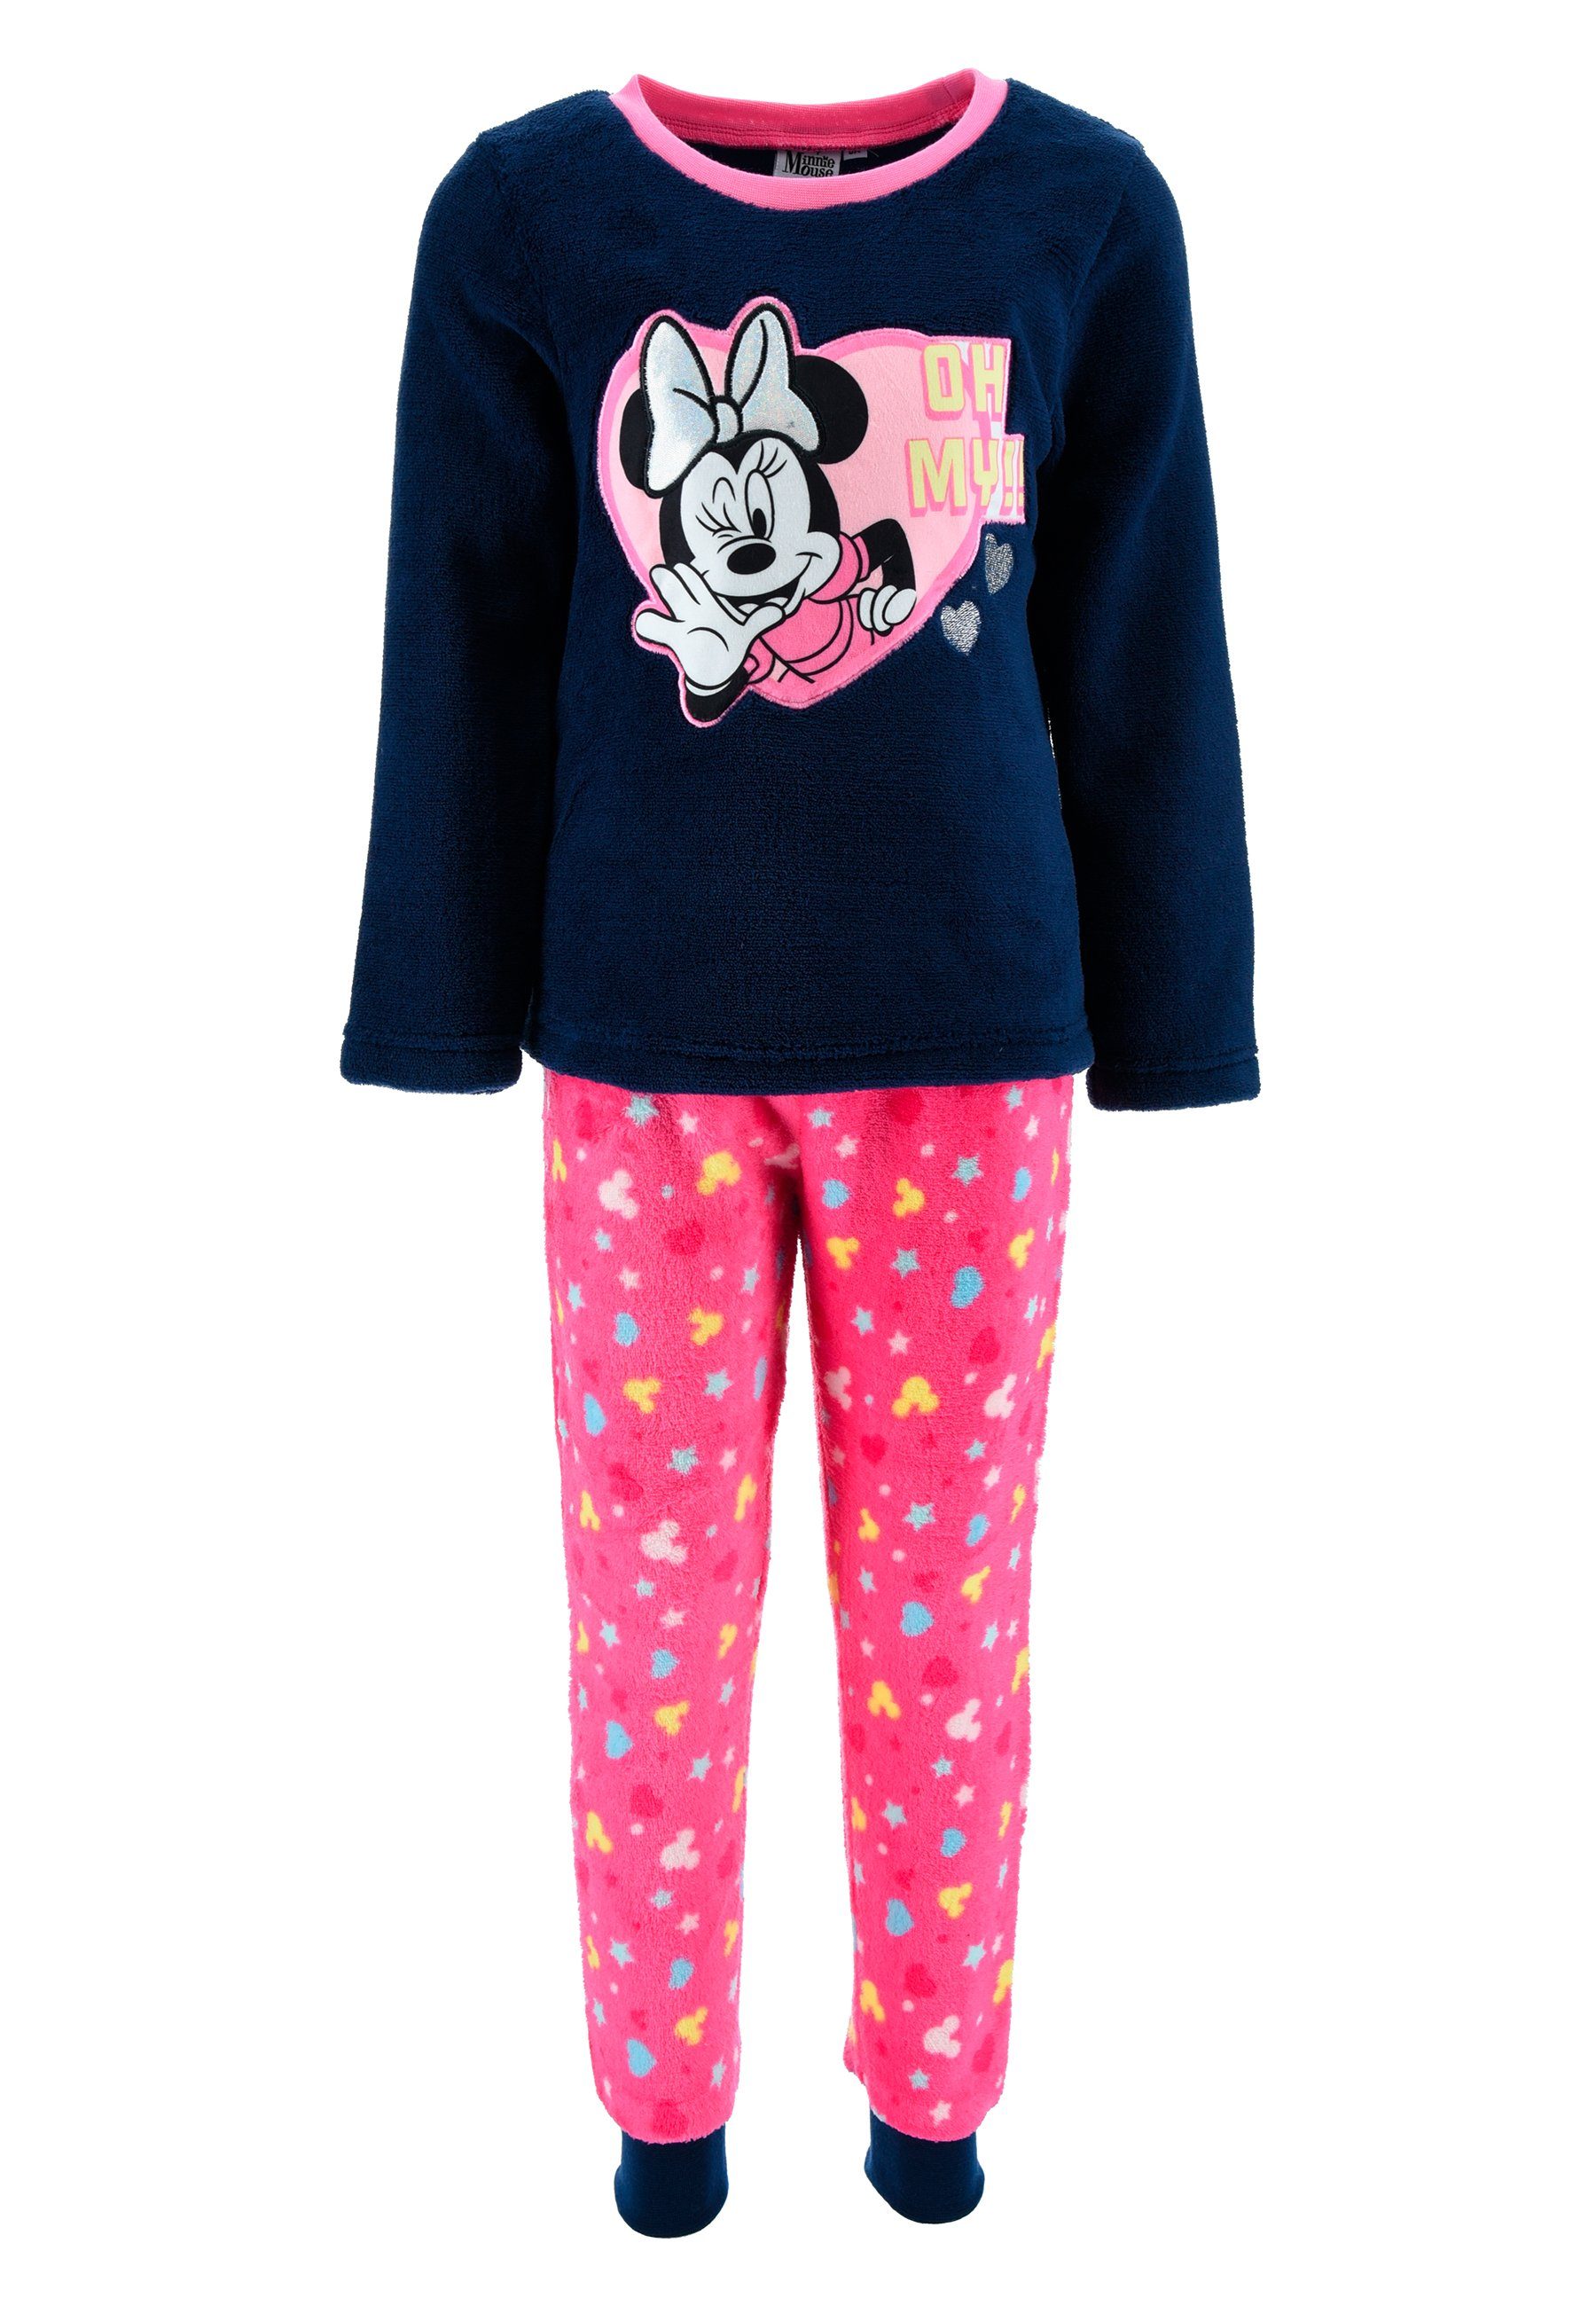 Disney Minnie Mouse Schlafanzug Kinder Mädchen Schlafanzug Kinder Pyjama Langarm Shirt + Schlaf-Hose (2 tlg) Dunkel-Blau